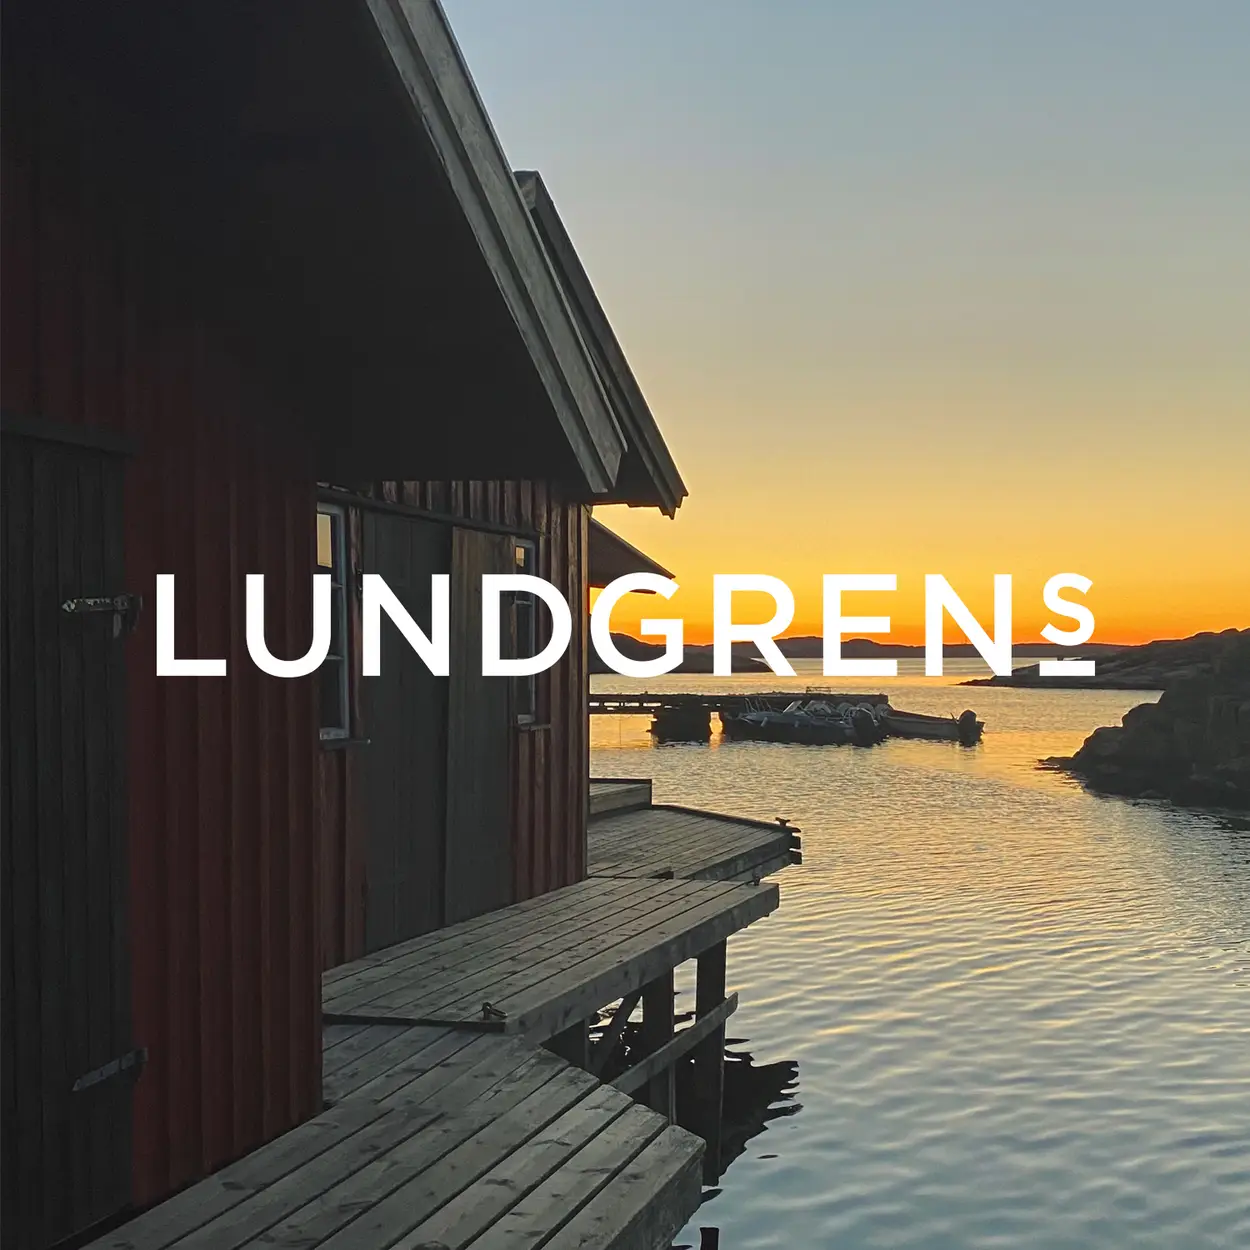 Lundgrens Snus